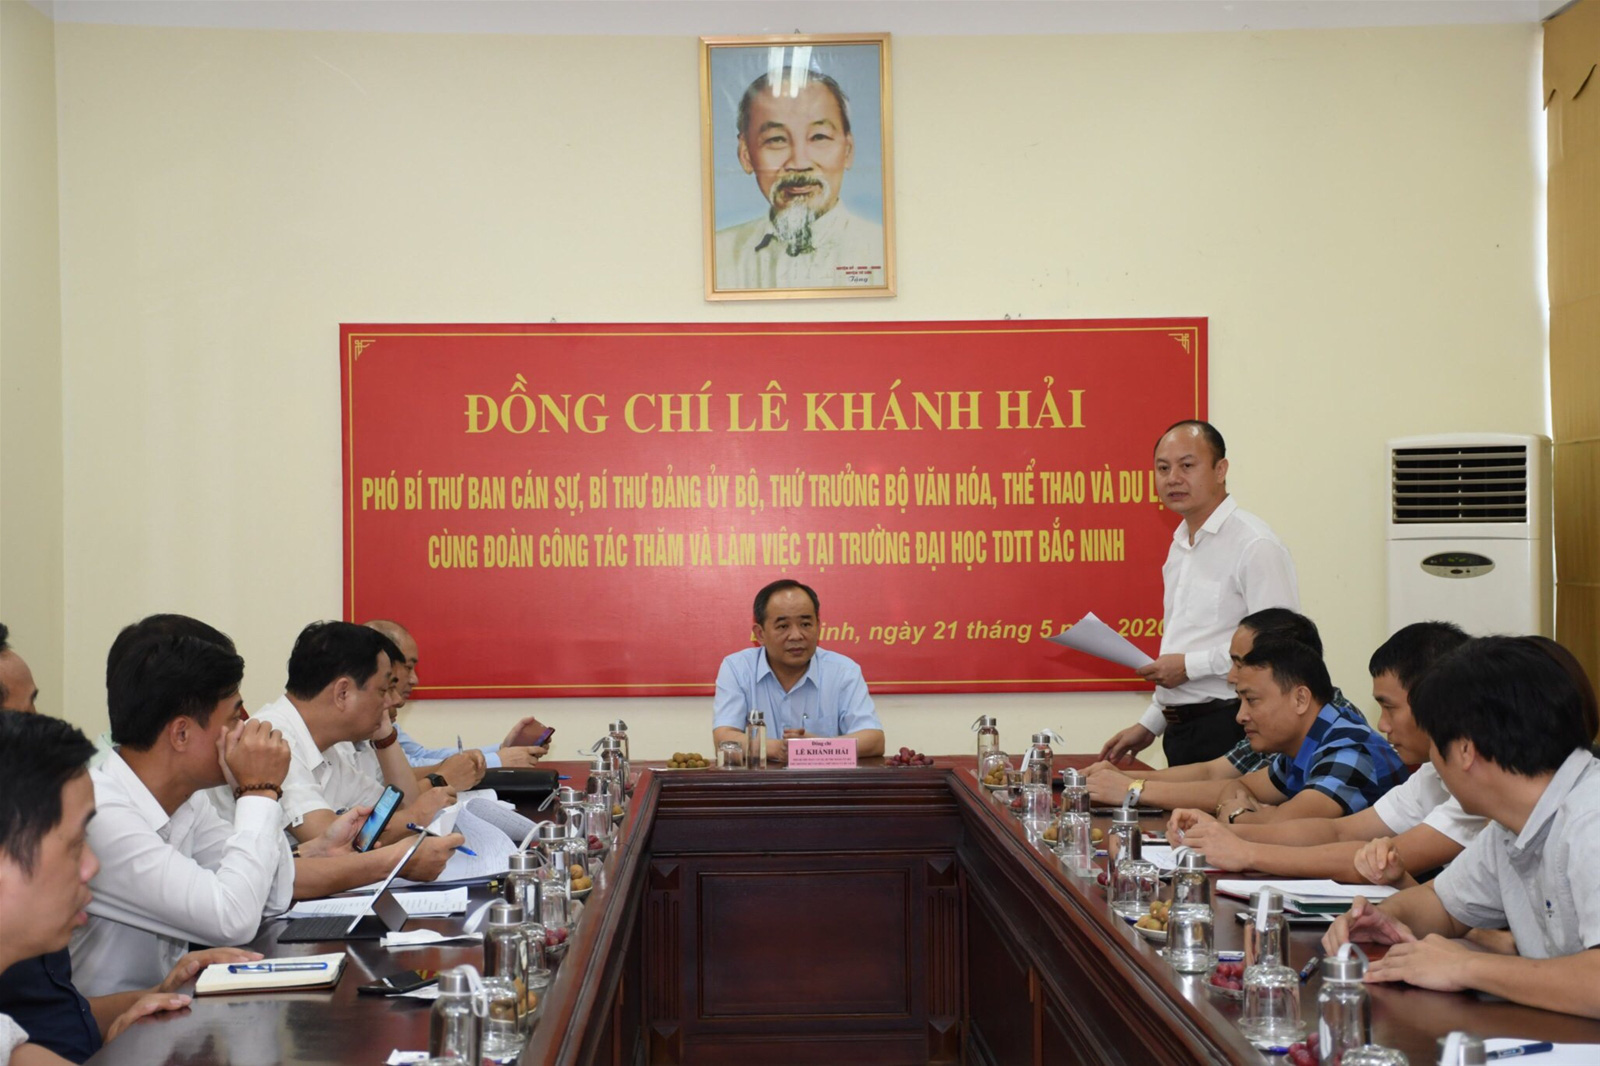 Thứ trưởng Lê Khánh Hải thăm và làm việc tại Trường Đại học TDTT Bắc Ninh - Ảnh 2.